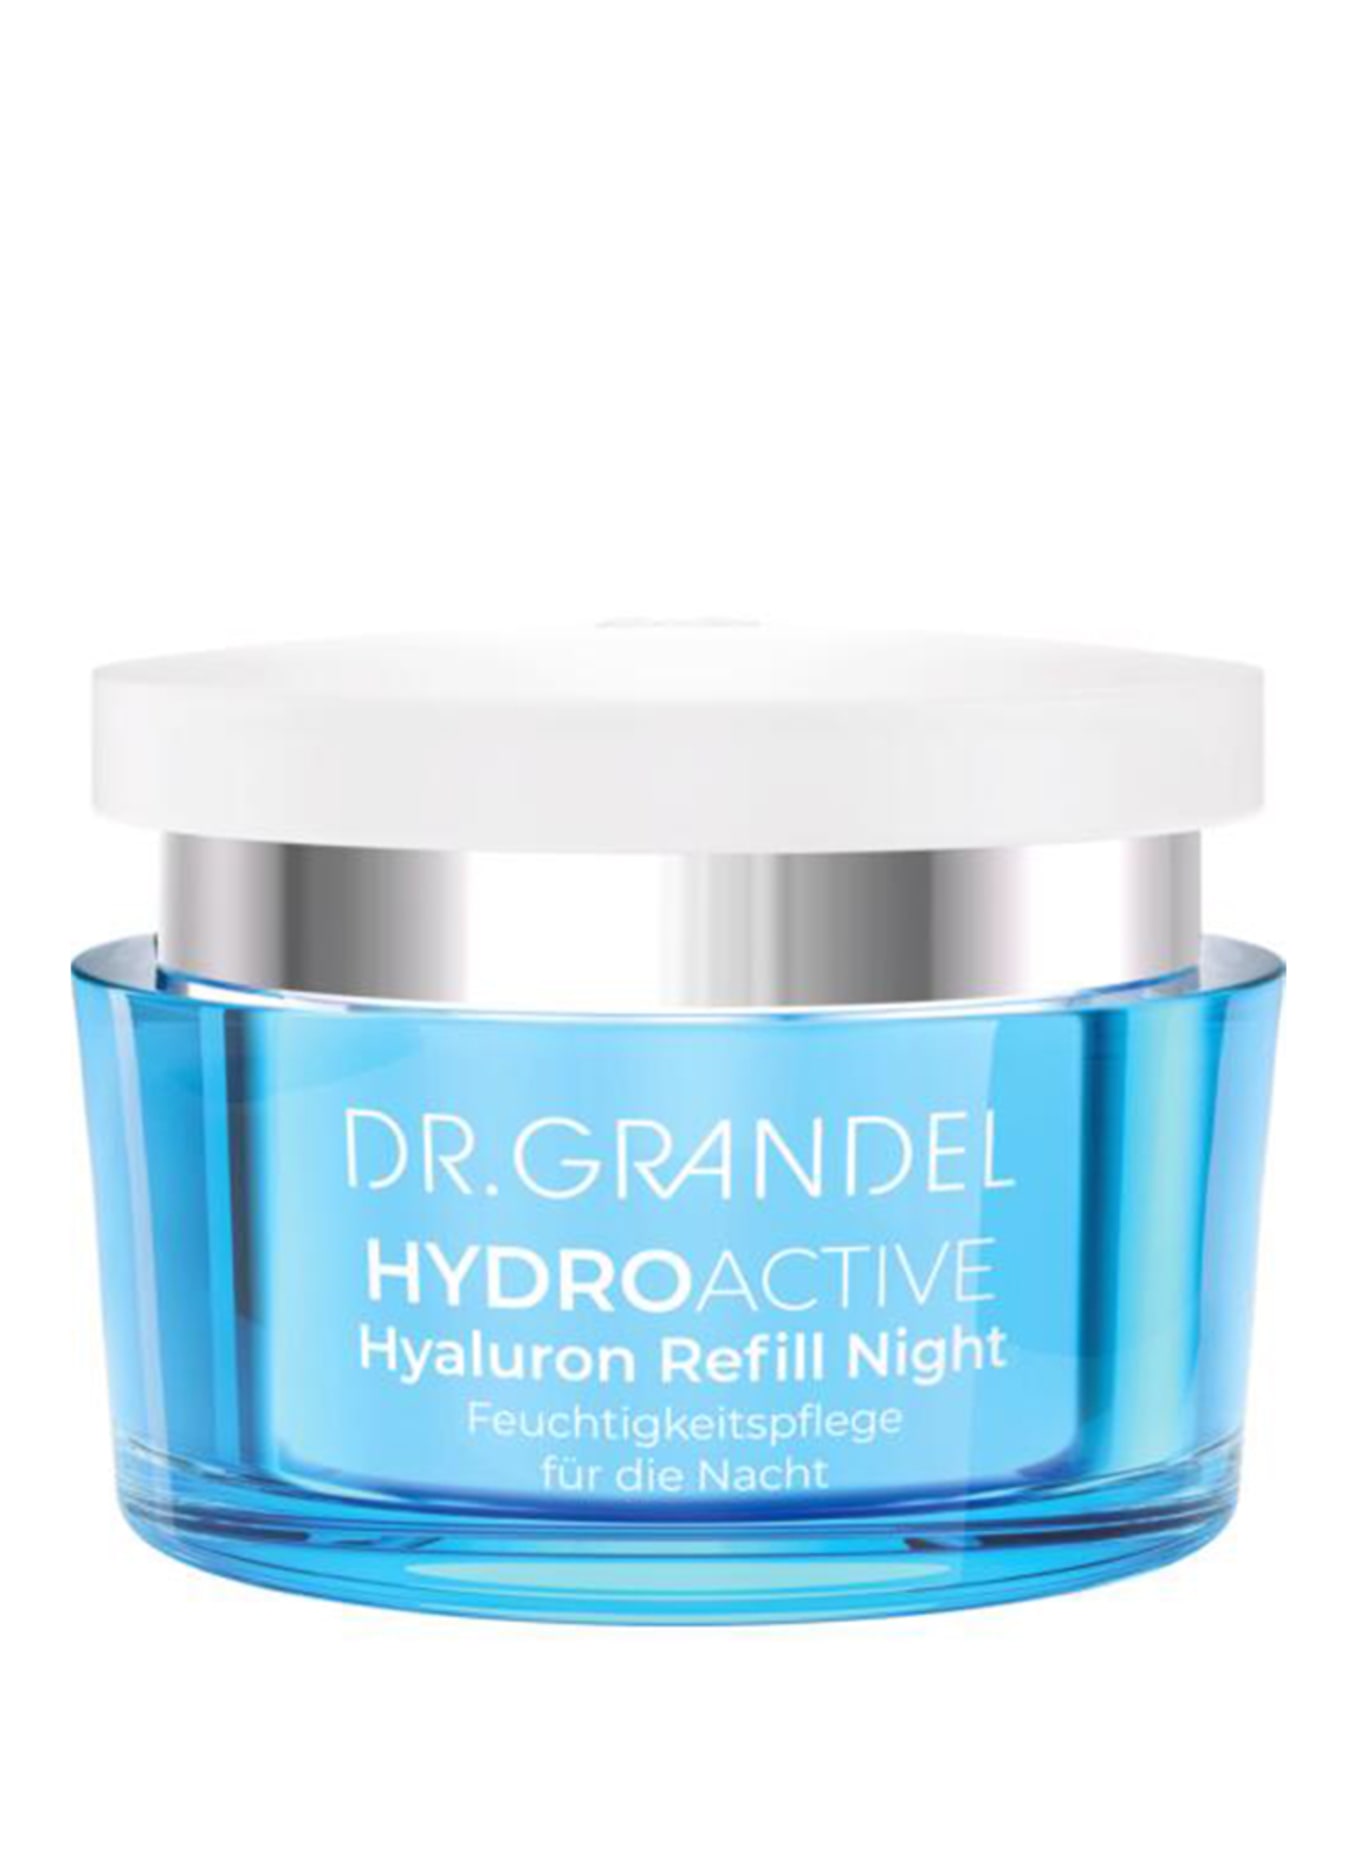 DR. GRANDEL HYDRO ACTIVE - HYALURON REFILL NIGHT (Obrazek 1)